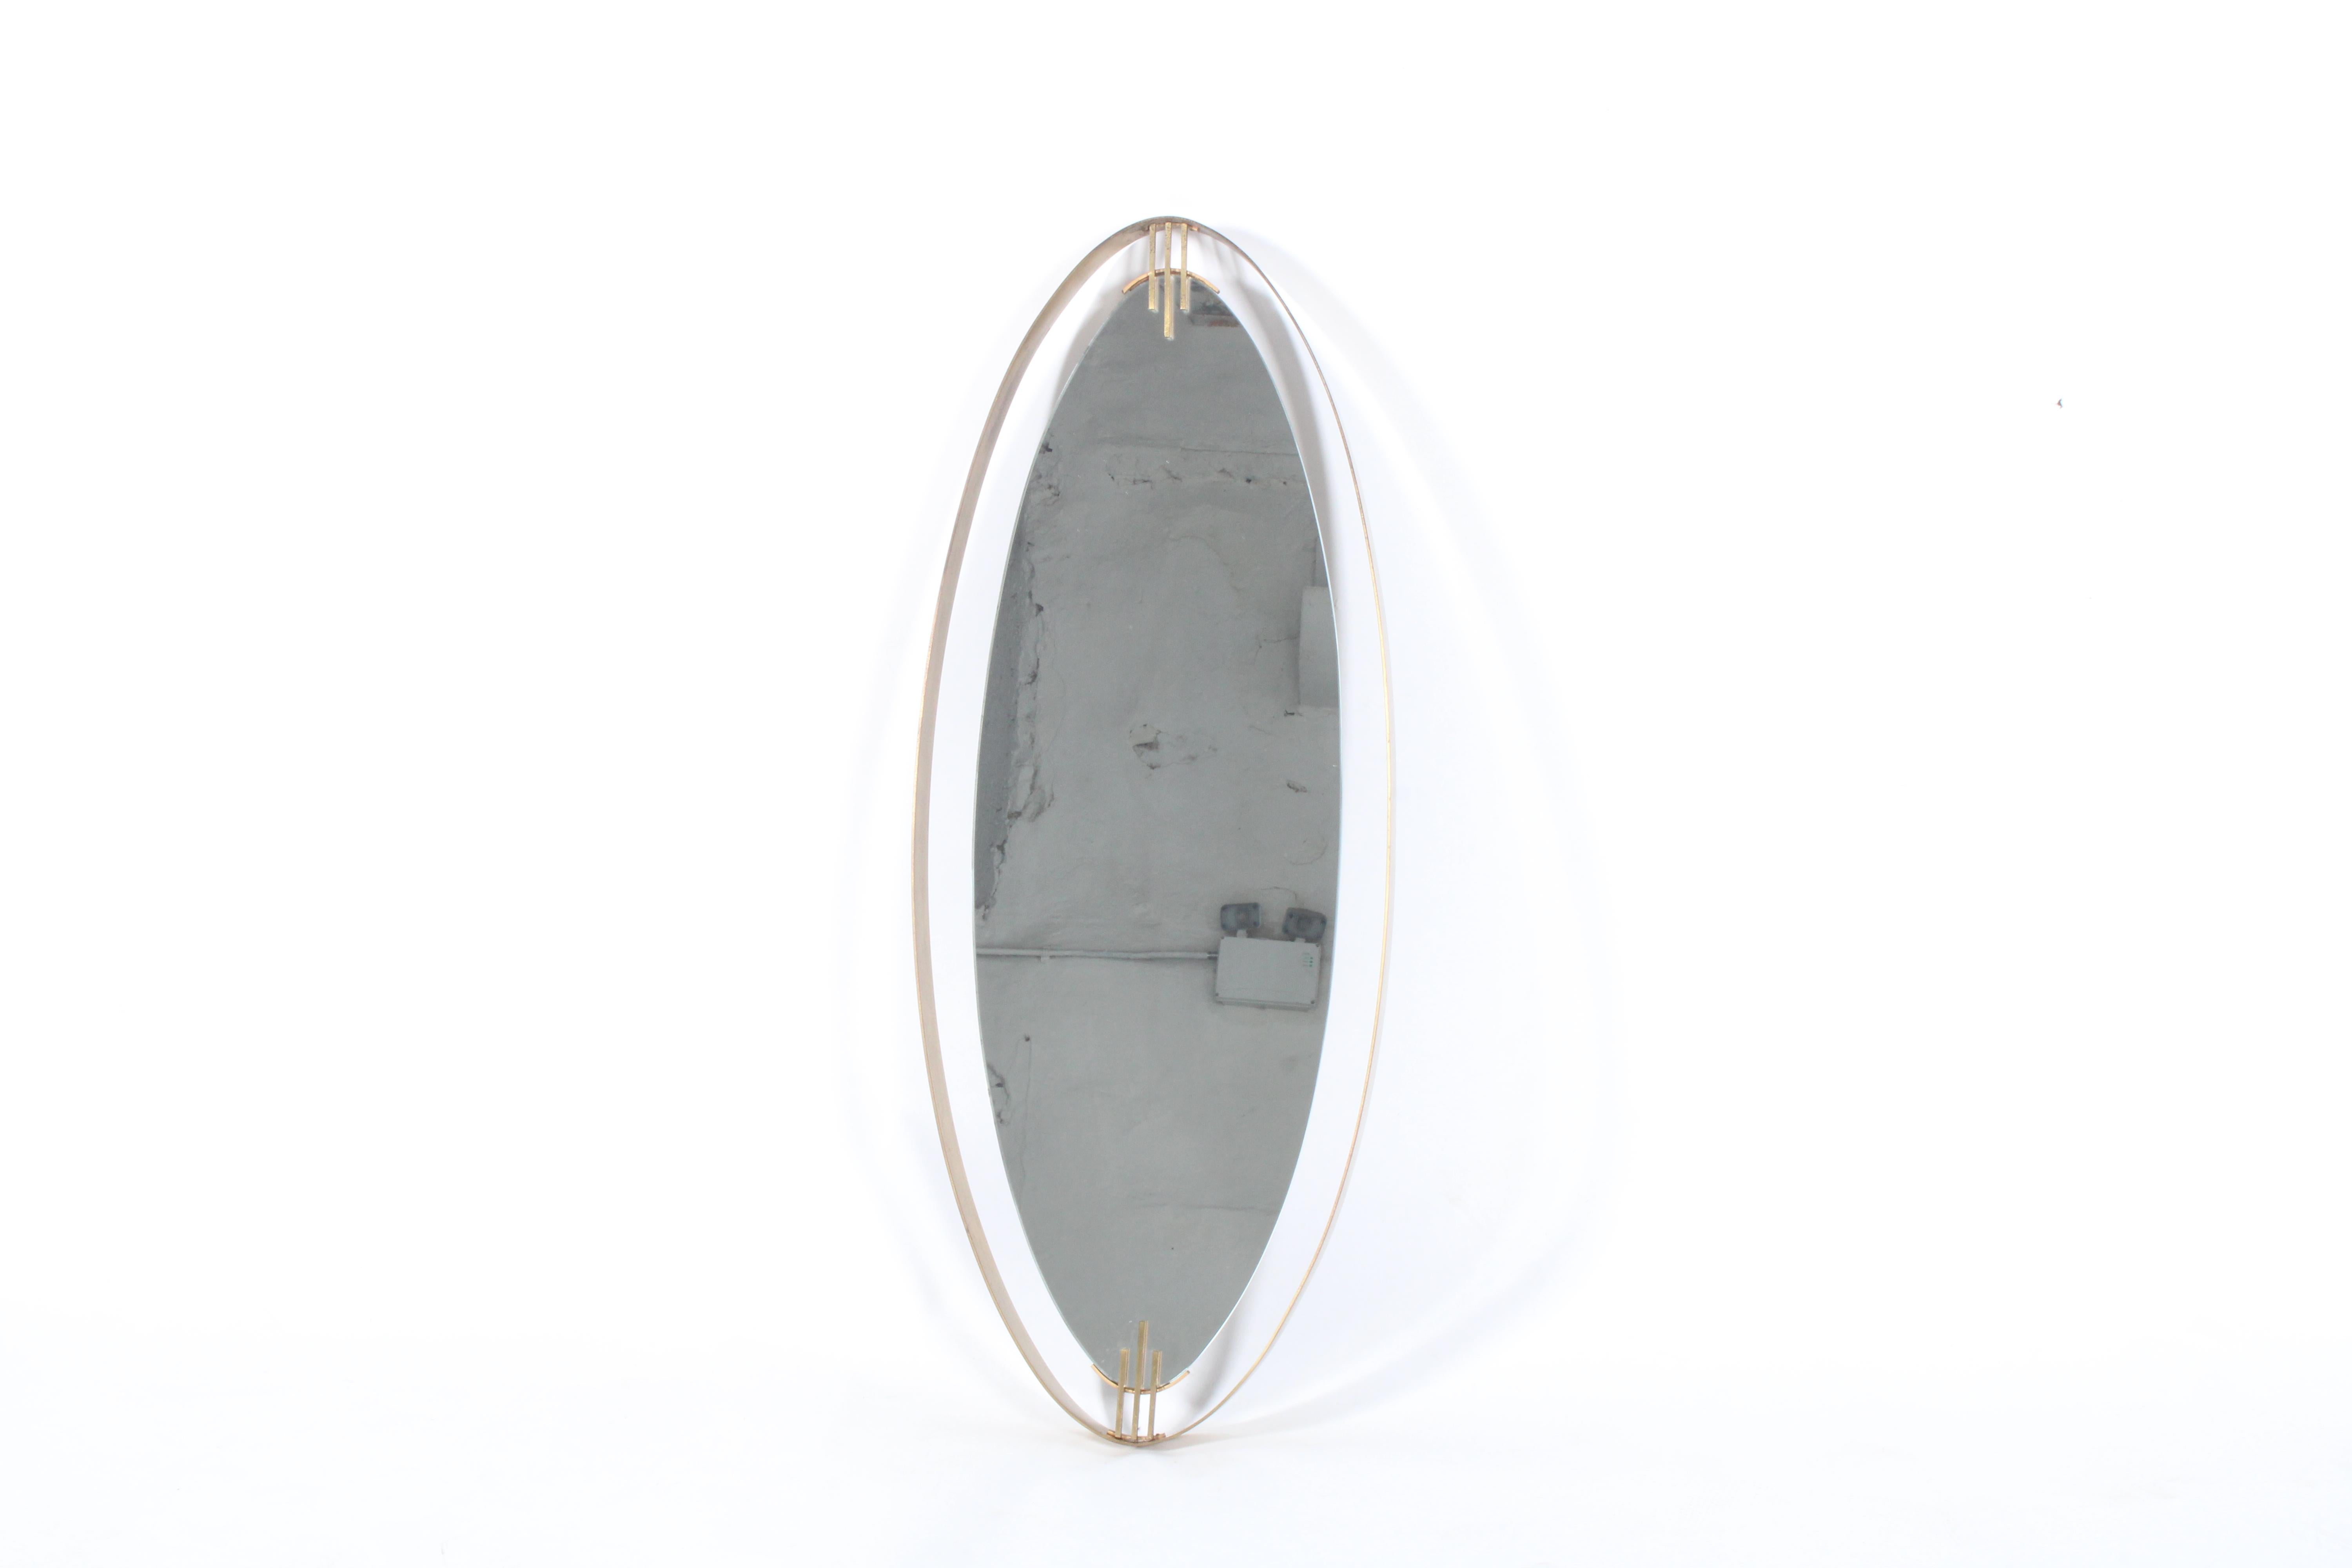 Superbe miroir elliptique en laiton encadré de style italien du milieu du siècle avec une usure et une patine étonnantes qui ajoutent du caractère, du charme, de l'authenticité et du style à cette pièce des plus attrayantes. Son cadre profond et